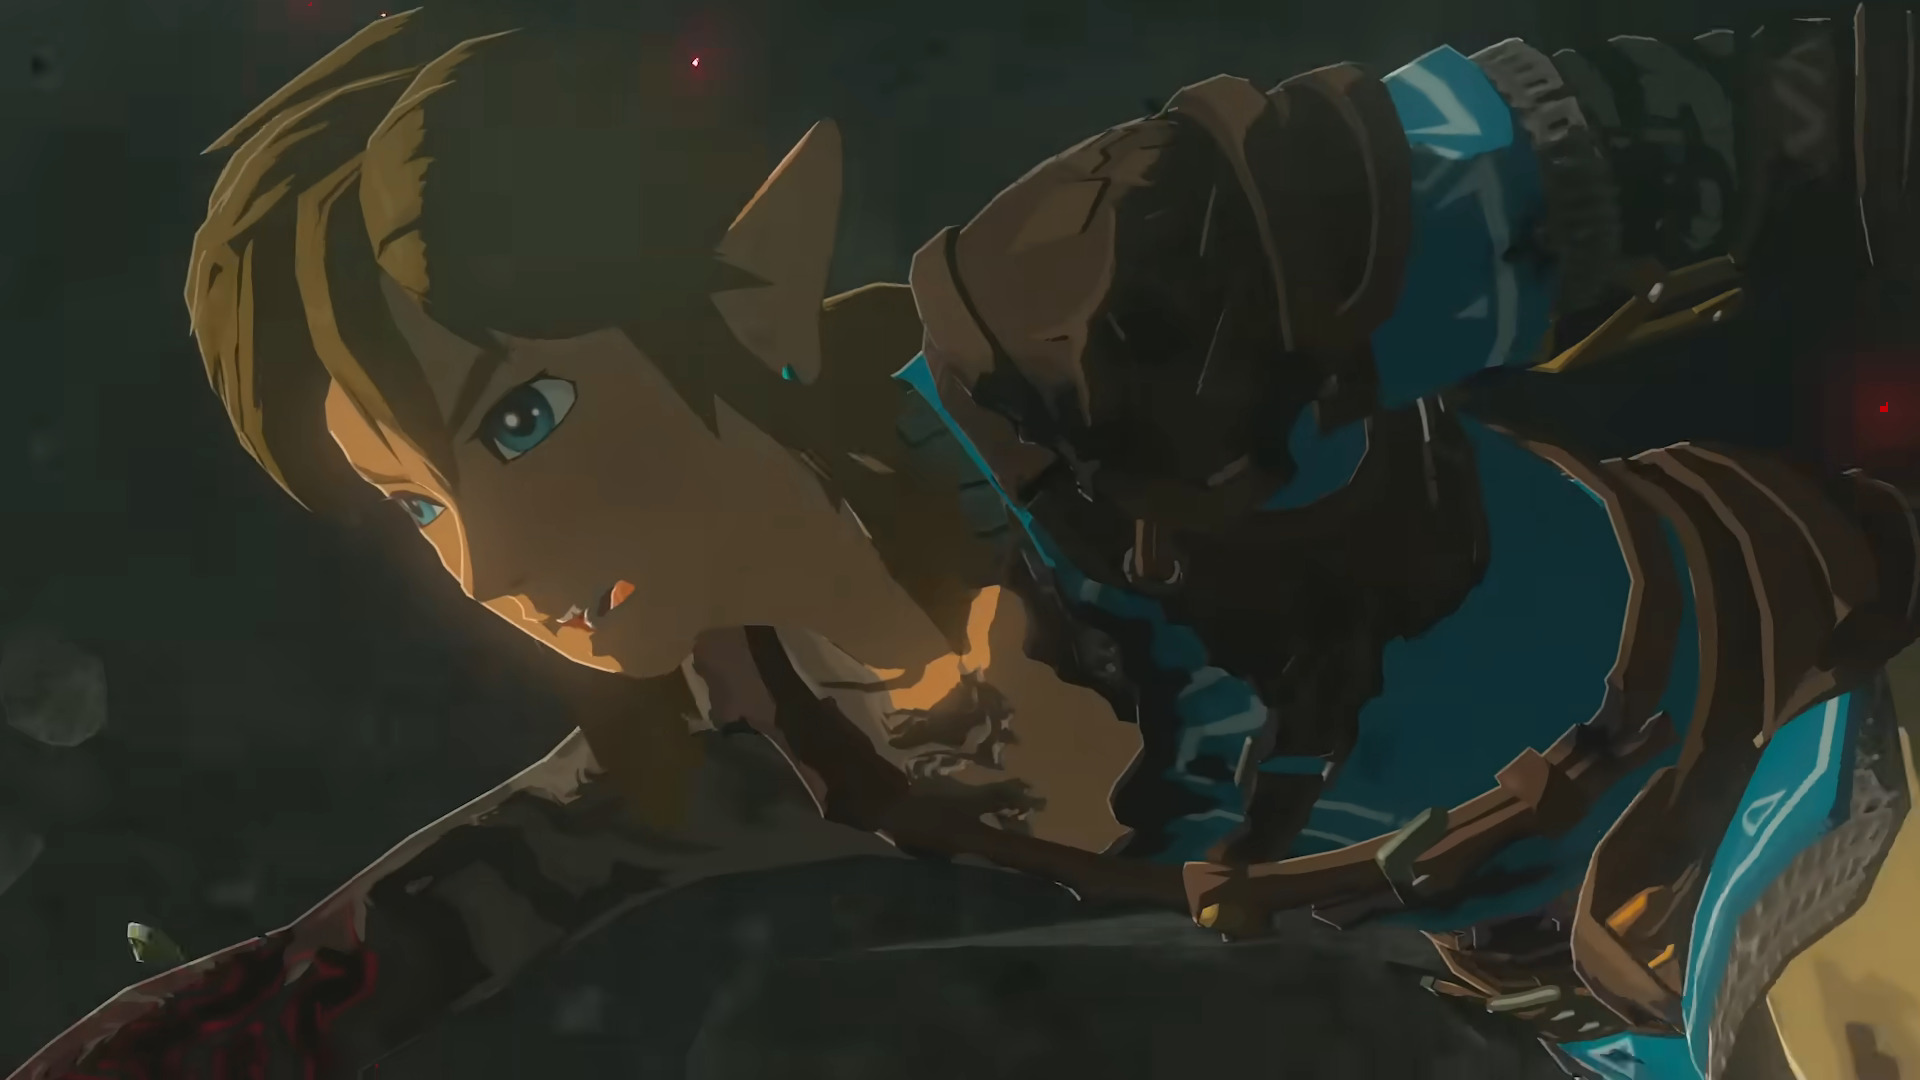 Link diving after Zelda